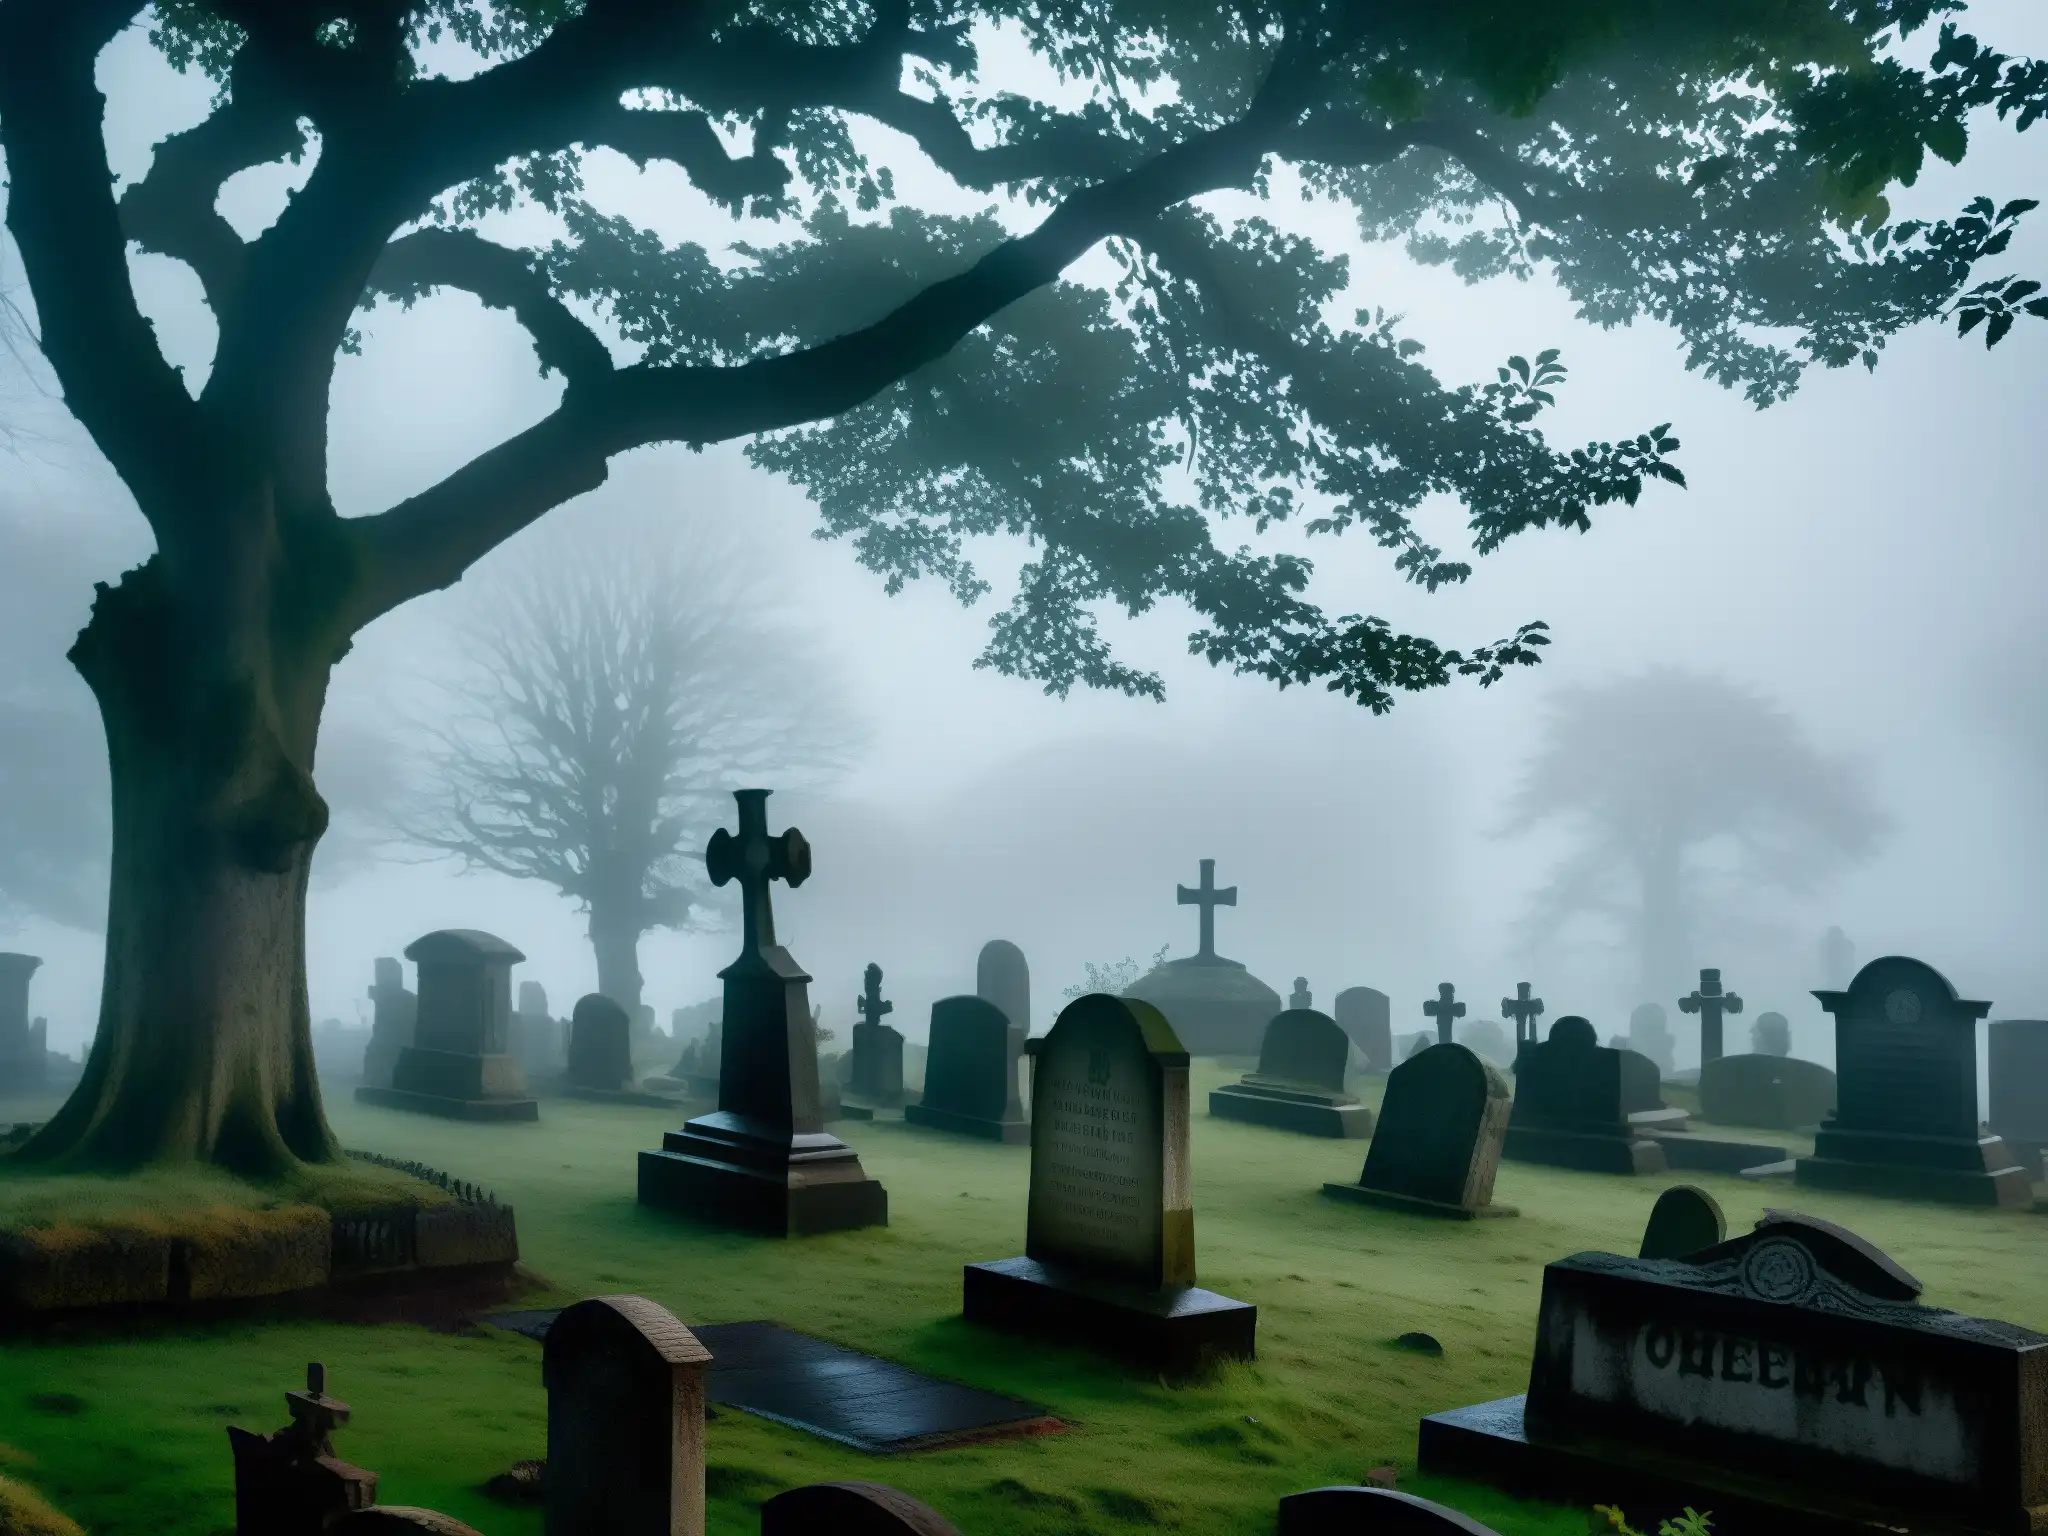 Una imagen documental de alta resolución del misterioso Cementerio Lothian envuelto en niebla al anochecer, con antiguas lápidas